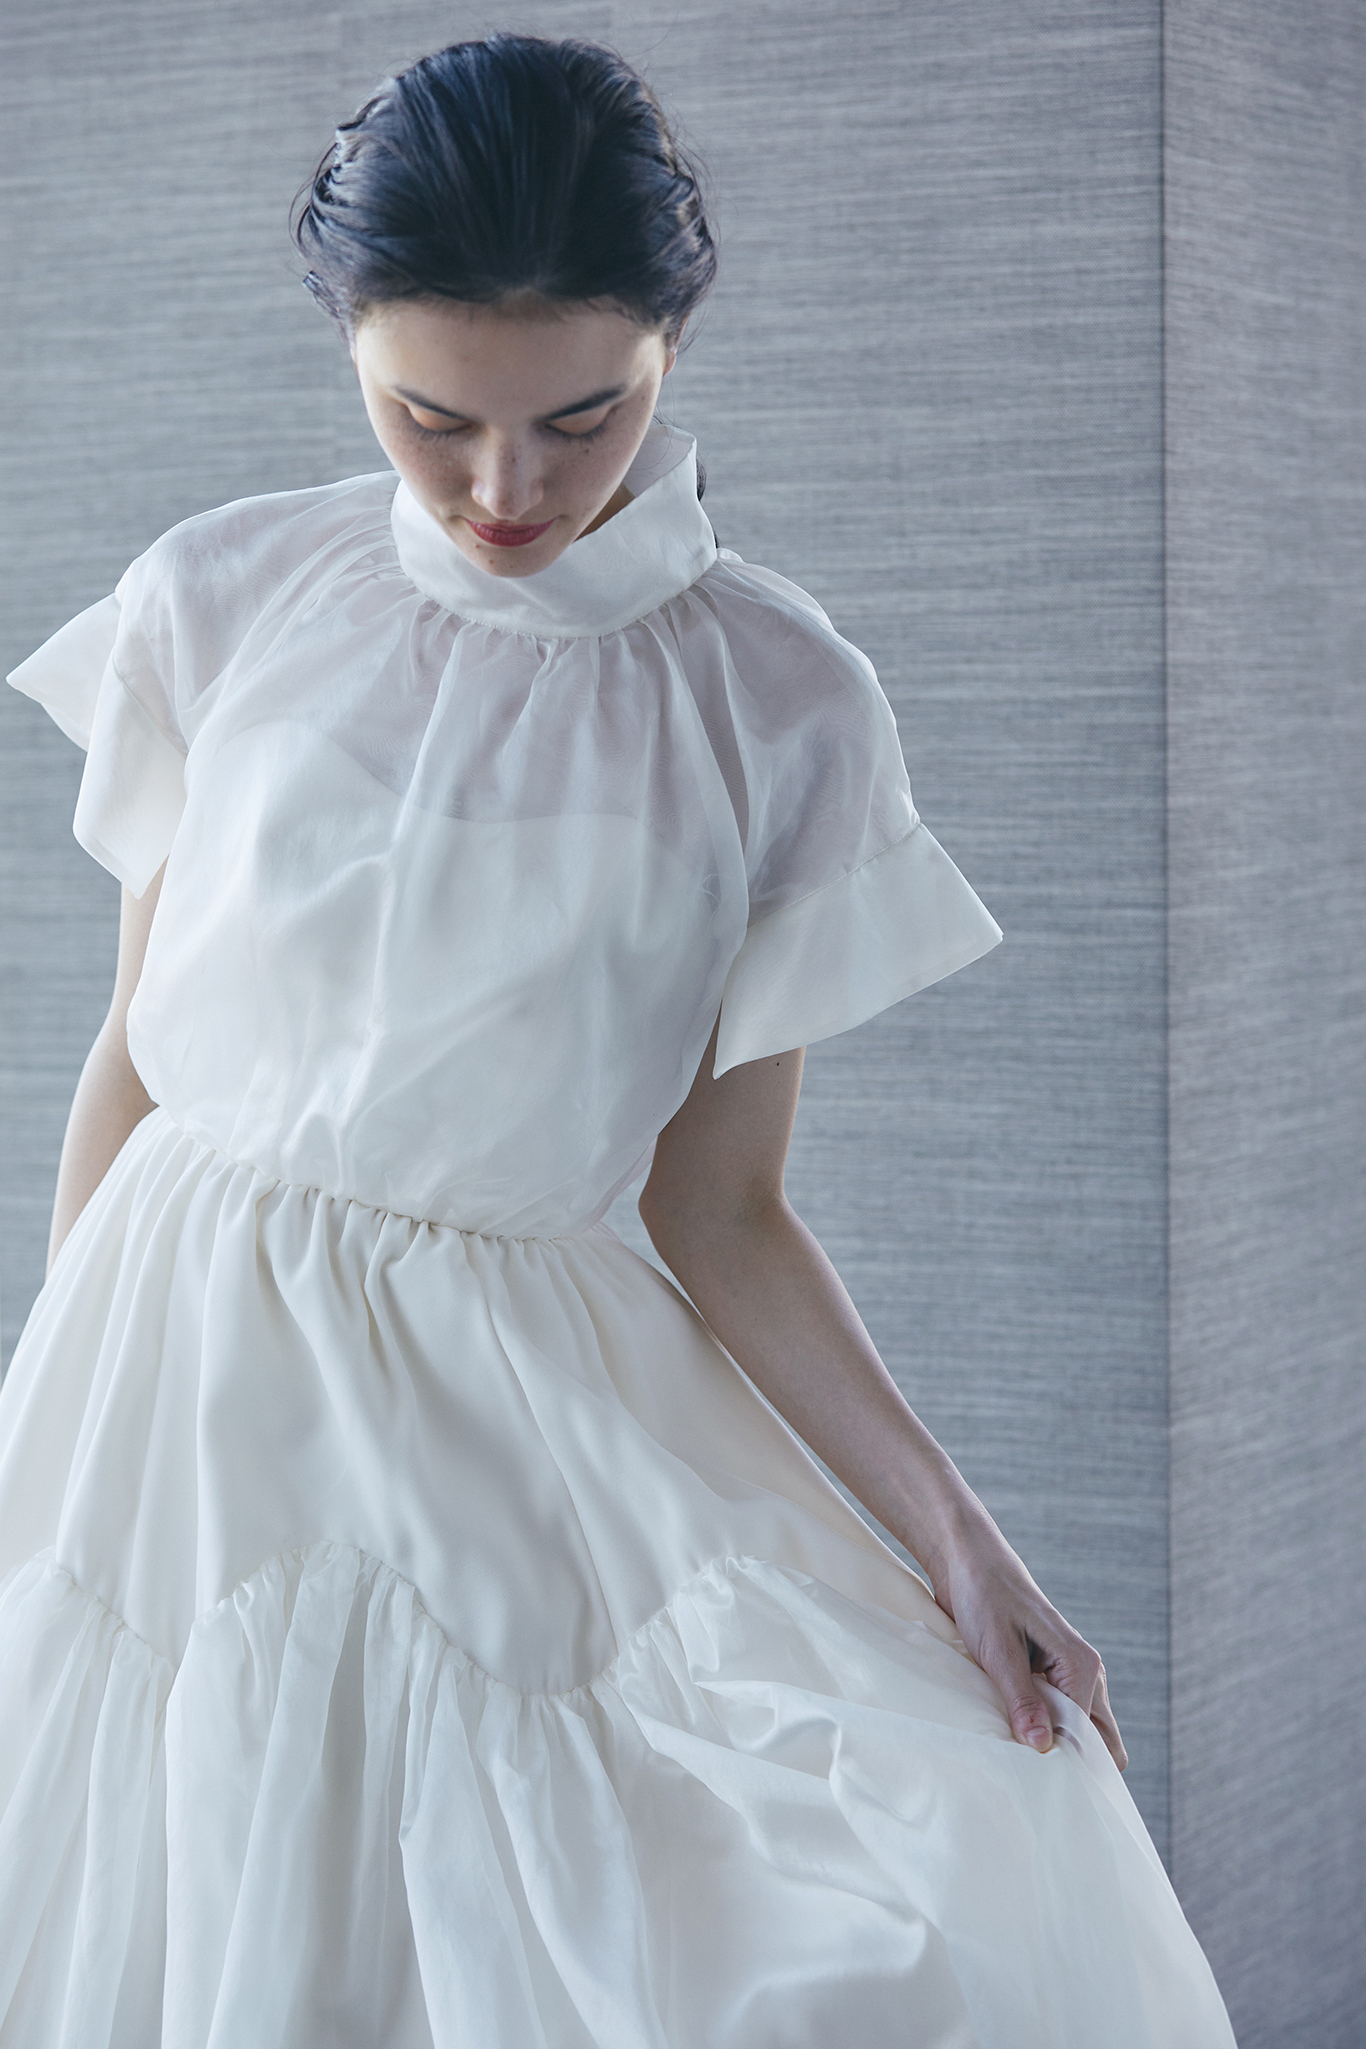 【夏のウエディングドレス①】オーガンジー素材の透け感のあるドレス